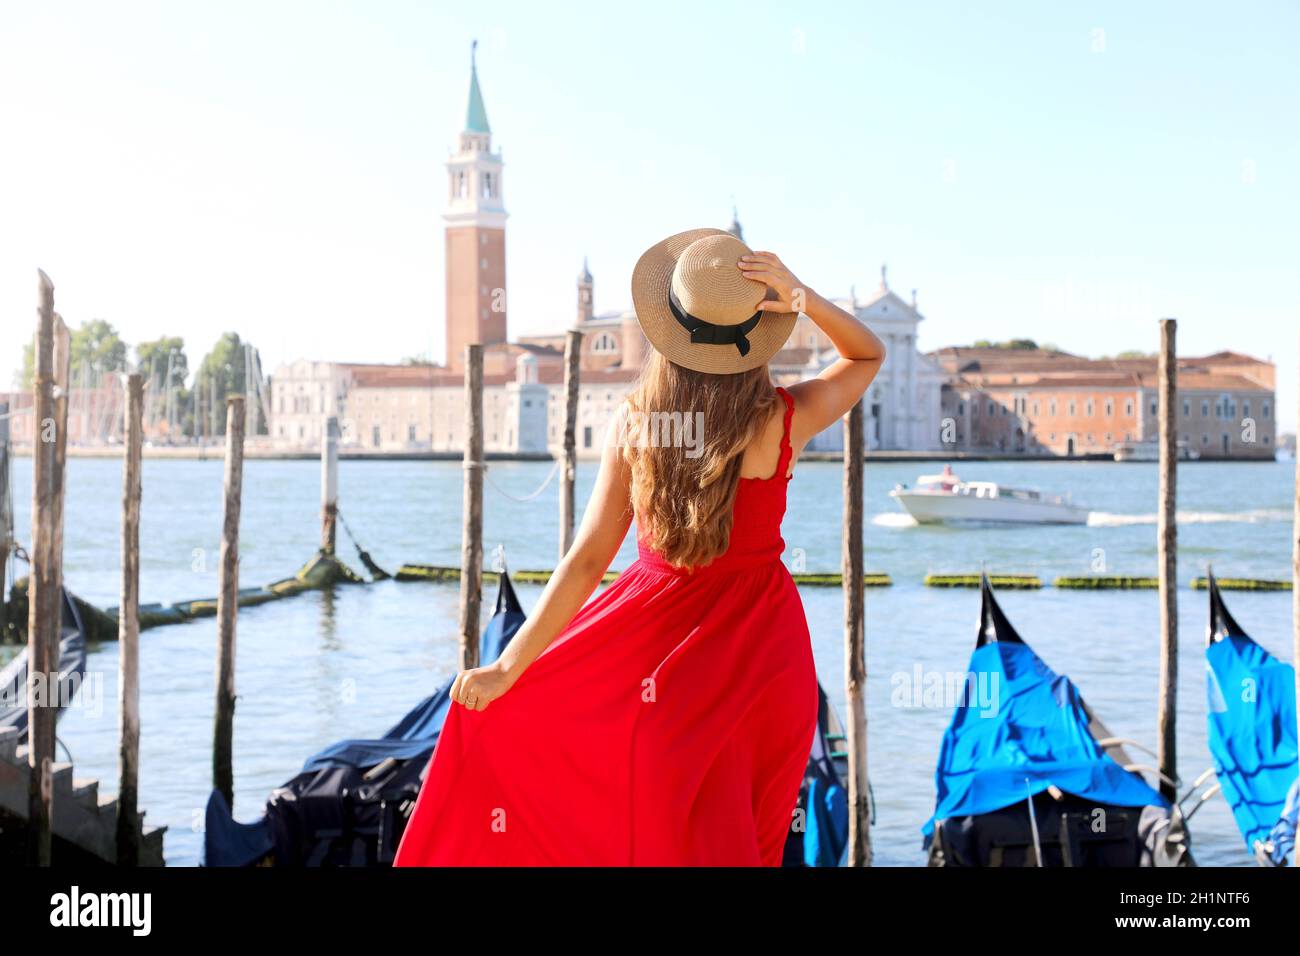 Mädchen, die Venedig in Italien besucht. Rückansicht der schönen jungen Frau in roten Kleid genießen Blick auf die Lagune von Venedig. Stockfoto